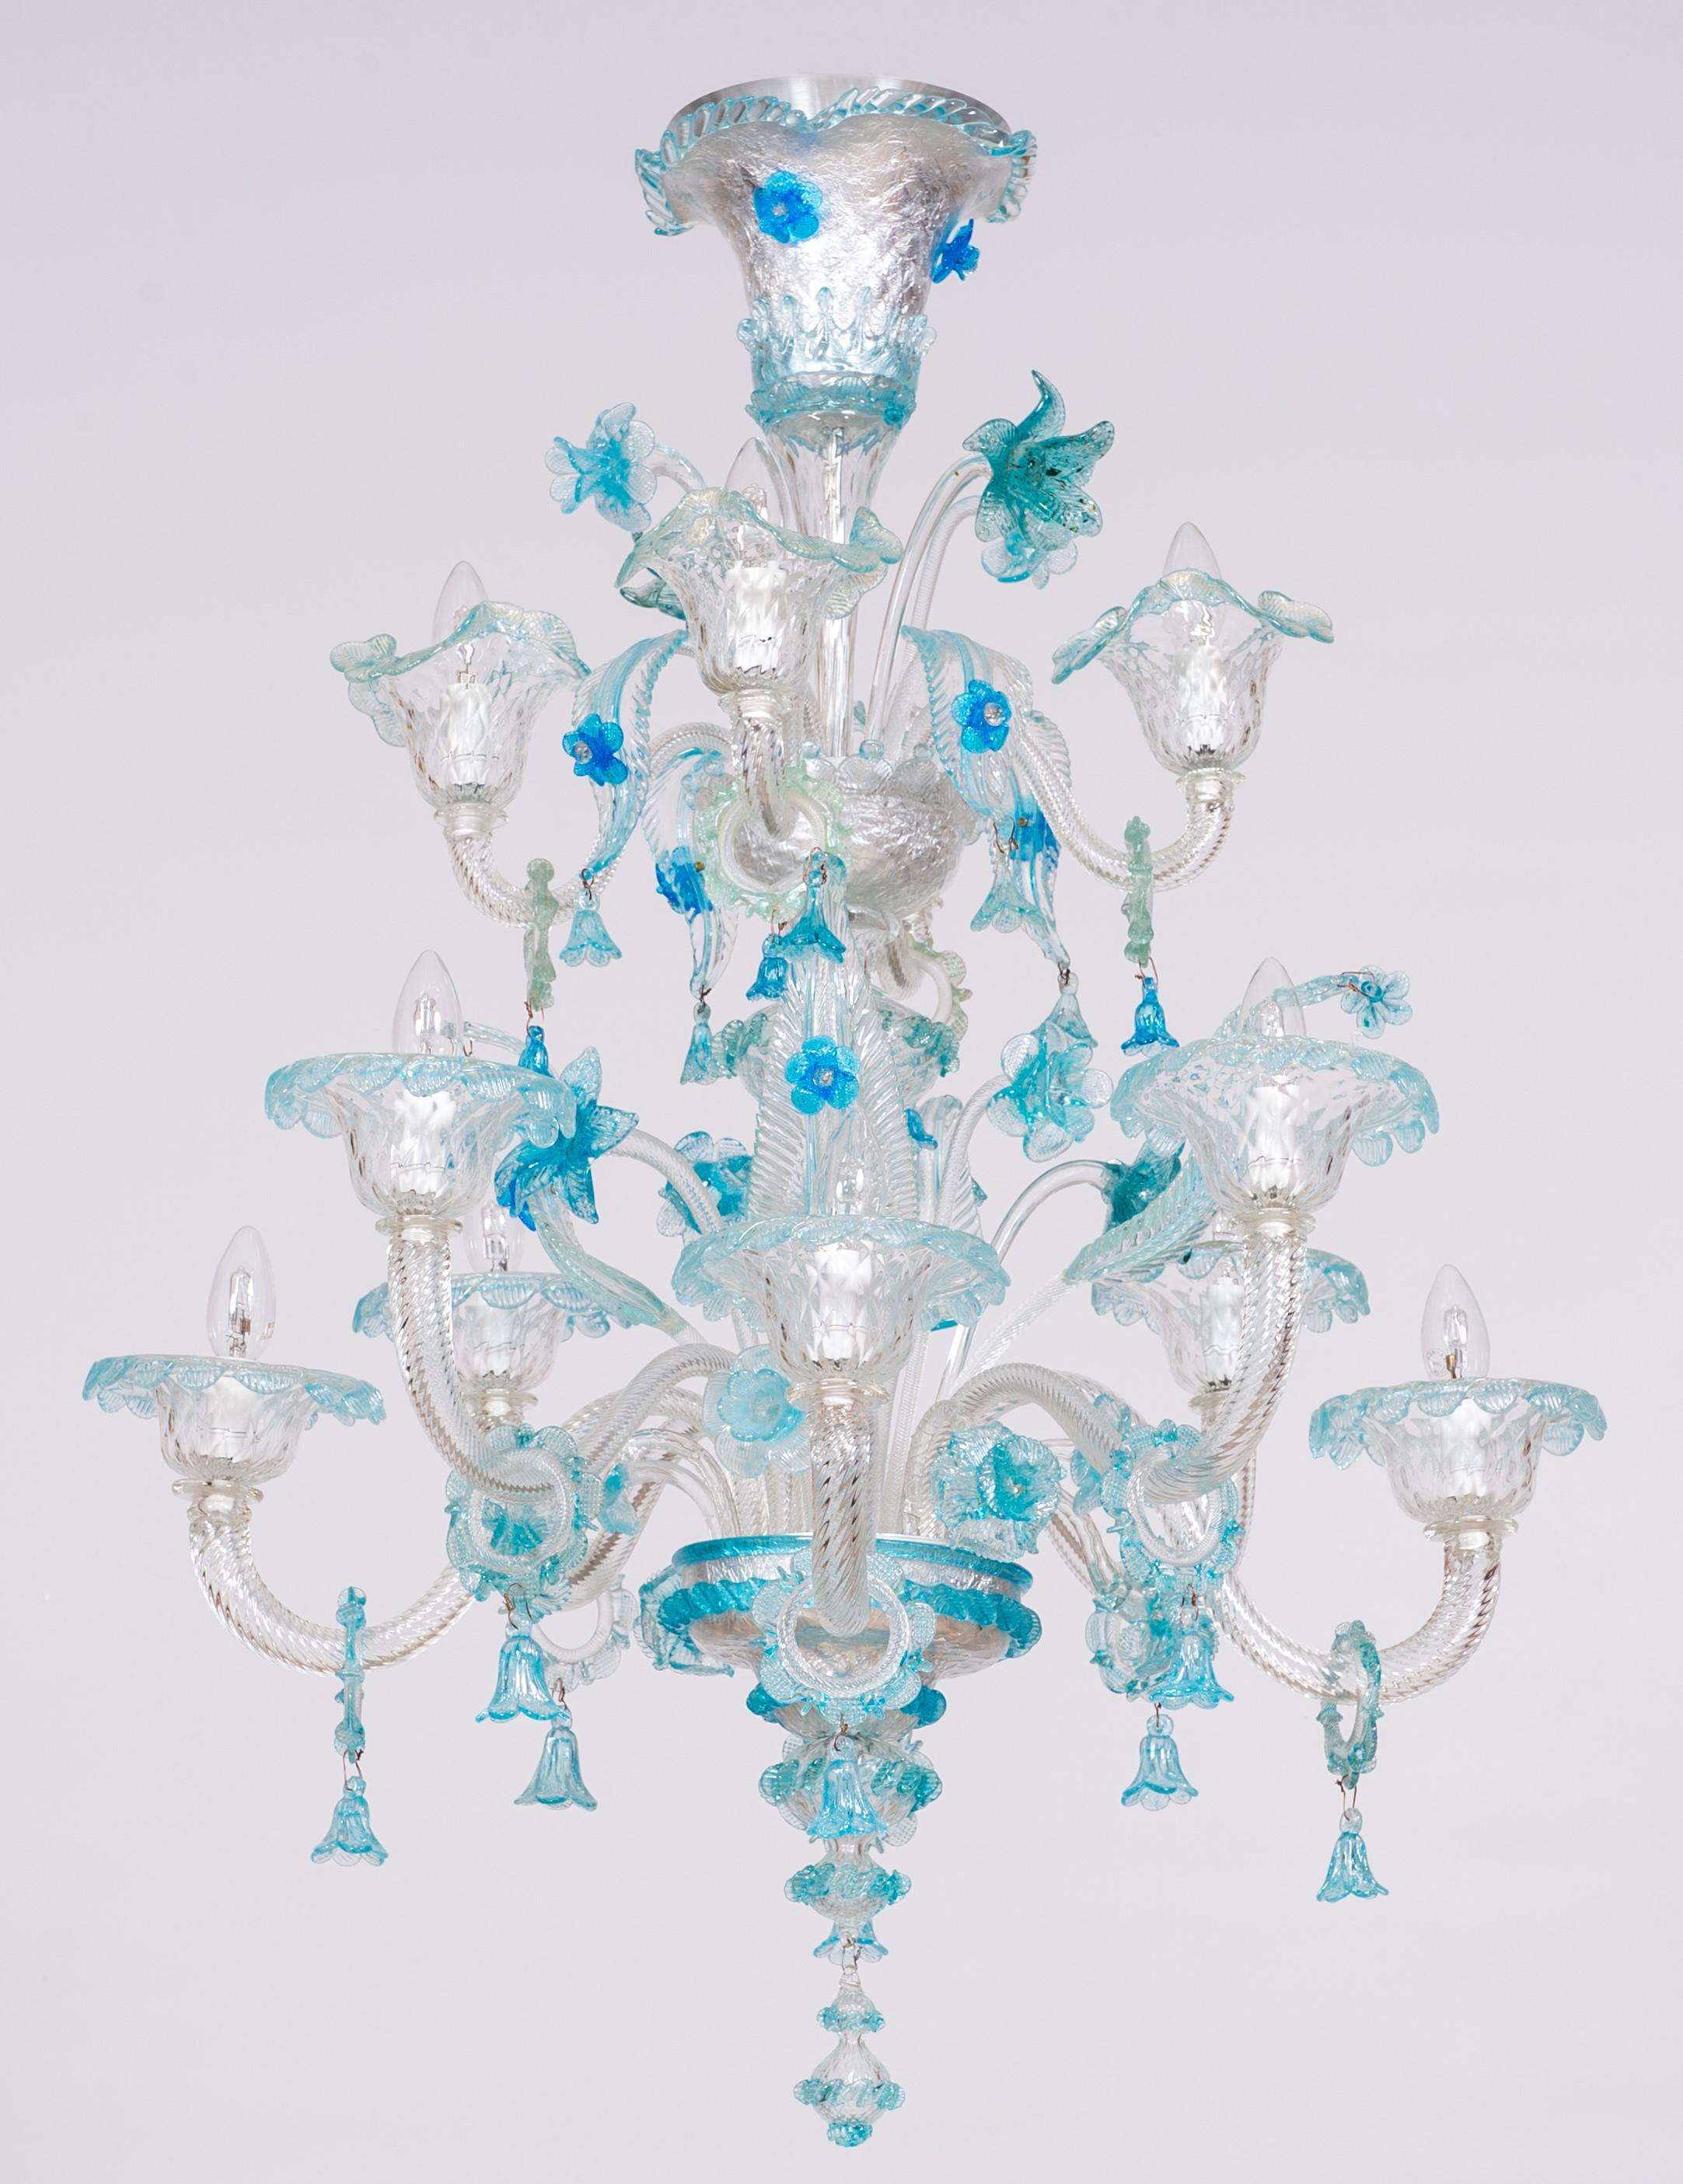 Doppelstöckiger Kronleuchter aus Murano-Glas mit lebhaften blauen Blumenmustern aus dem Italien der 1990er Jahre.
Majestätischer doppelstöckiger Murano-Glaskronleuchter mit exquisitem blauem Blumendesign
Dieser exquisite Kronleuchter verkörpert das